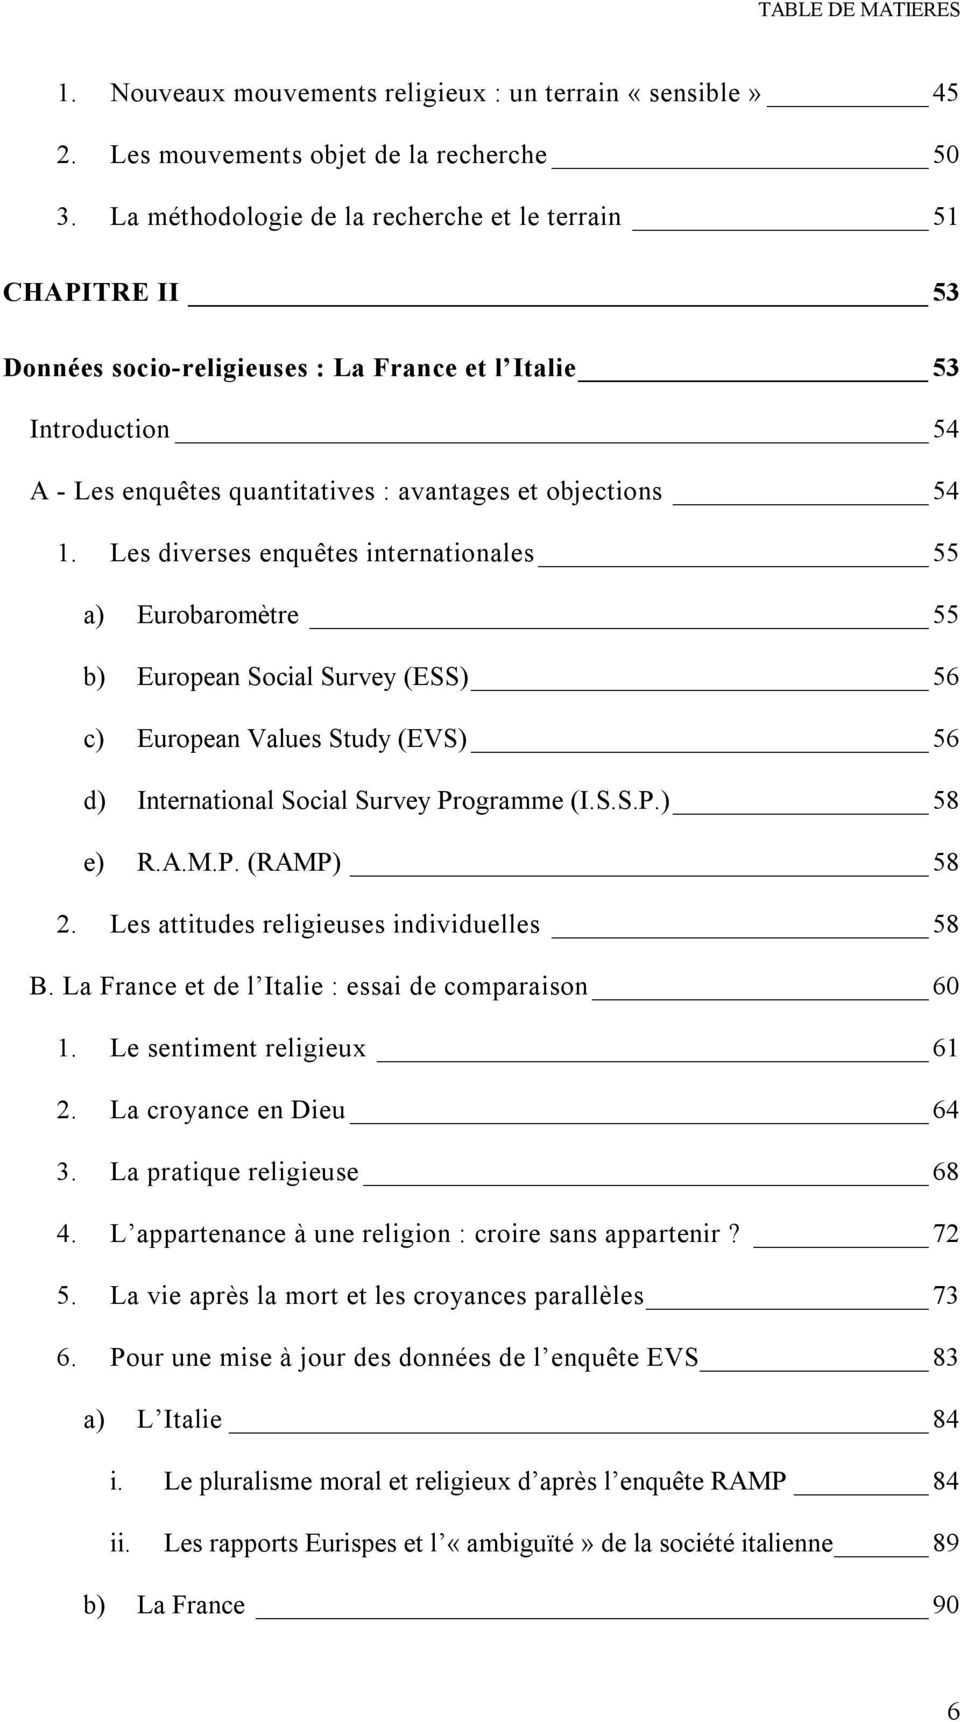 Les diverses enquêtes internationales 55 a) Eurobaromètre 55 b) European Social Survey (ESS) 56 c) European Values Study (EVS) 56 d) International Social Survey Programme (I.S.S.P.) 58 e) R.A.M.P. (RAMP) 58 2.